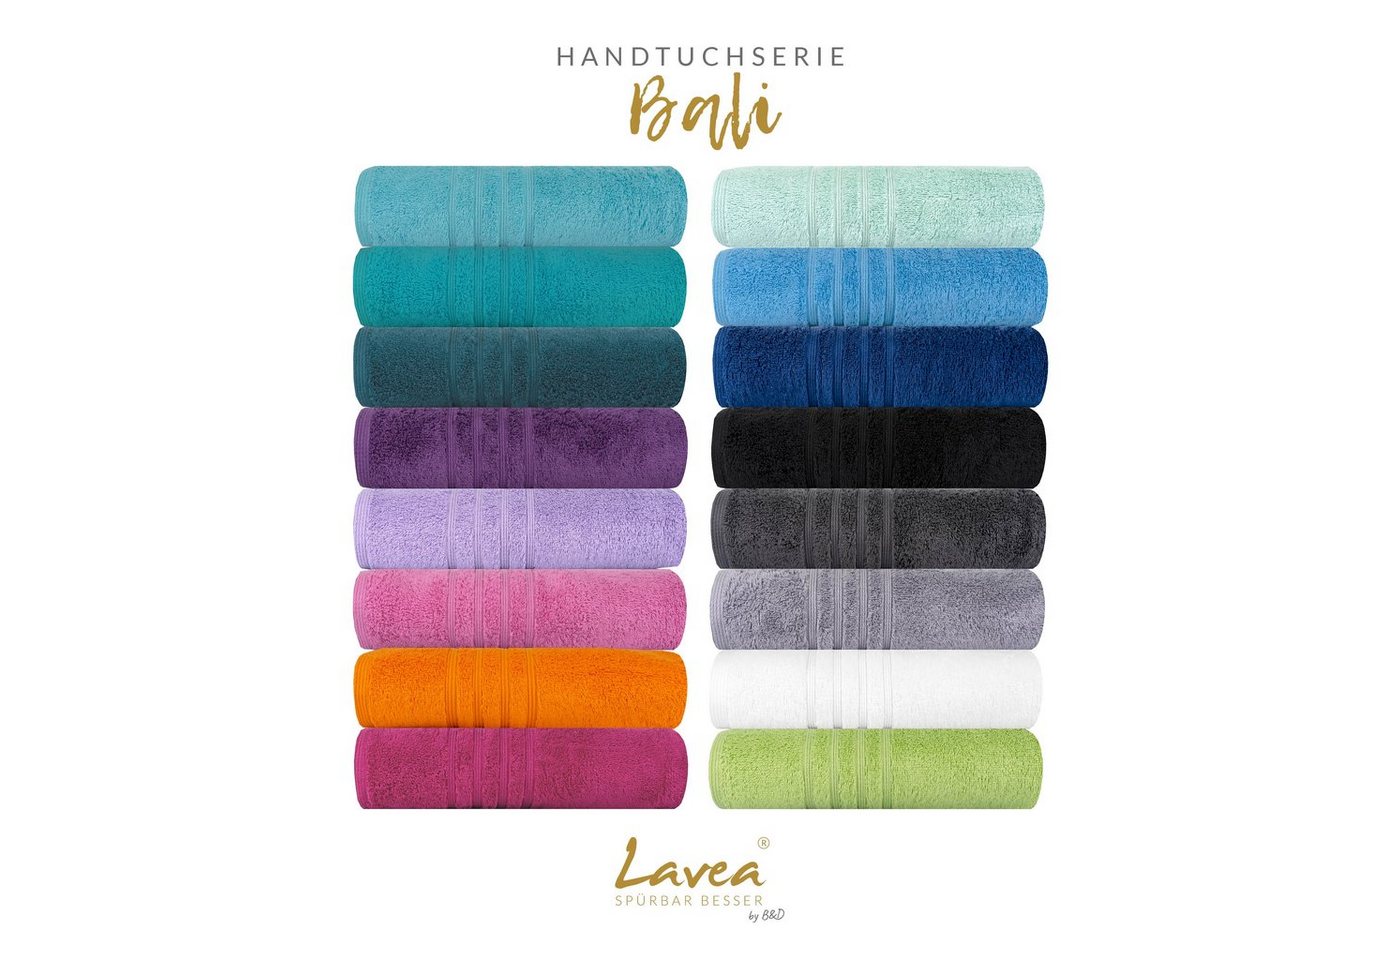 Lavea Handtuch Serie Bali, 50 x 100cm, aus 100% Bio-Baumwolle von Lavea